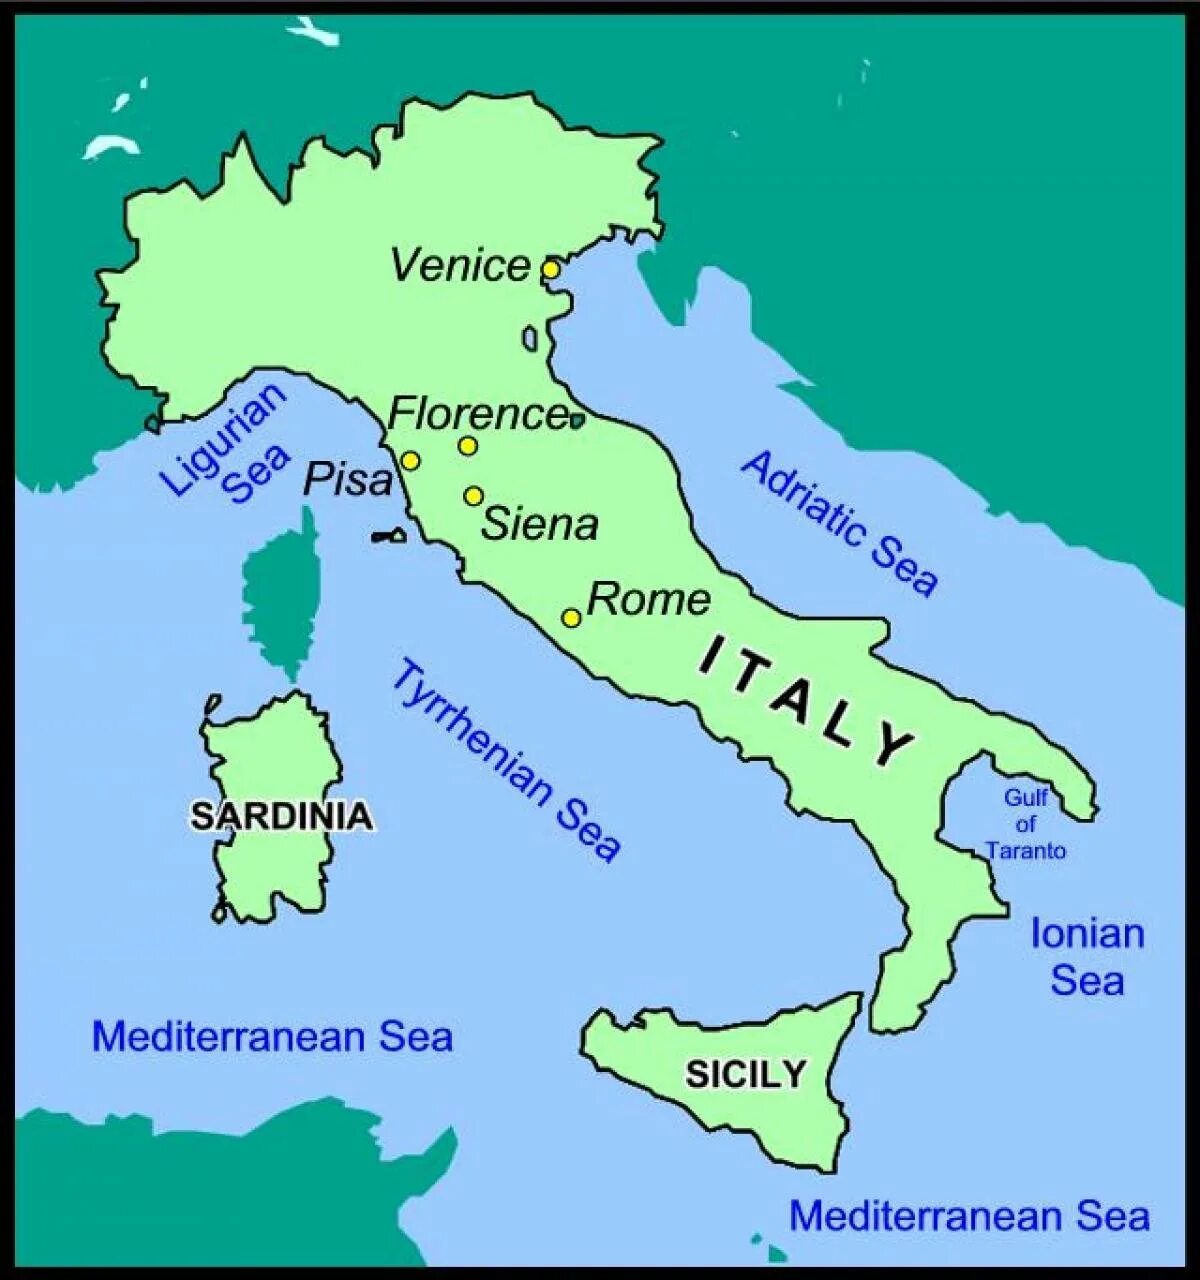 Италия страна на карте. Территория Италии. Венеция на карте. Карта Италии.